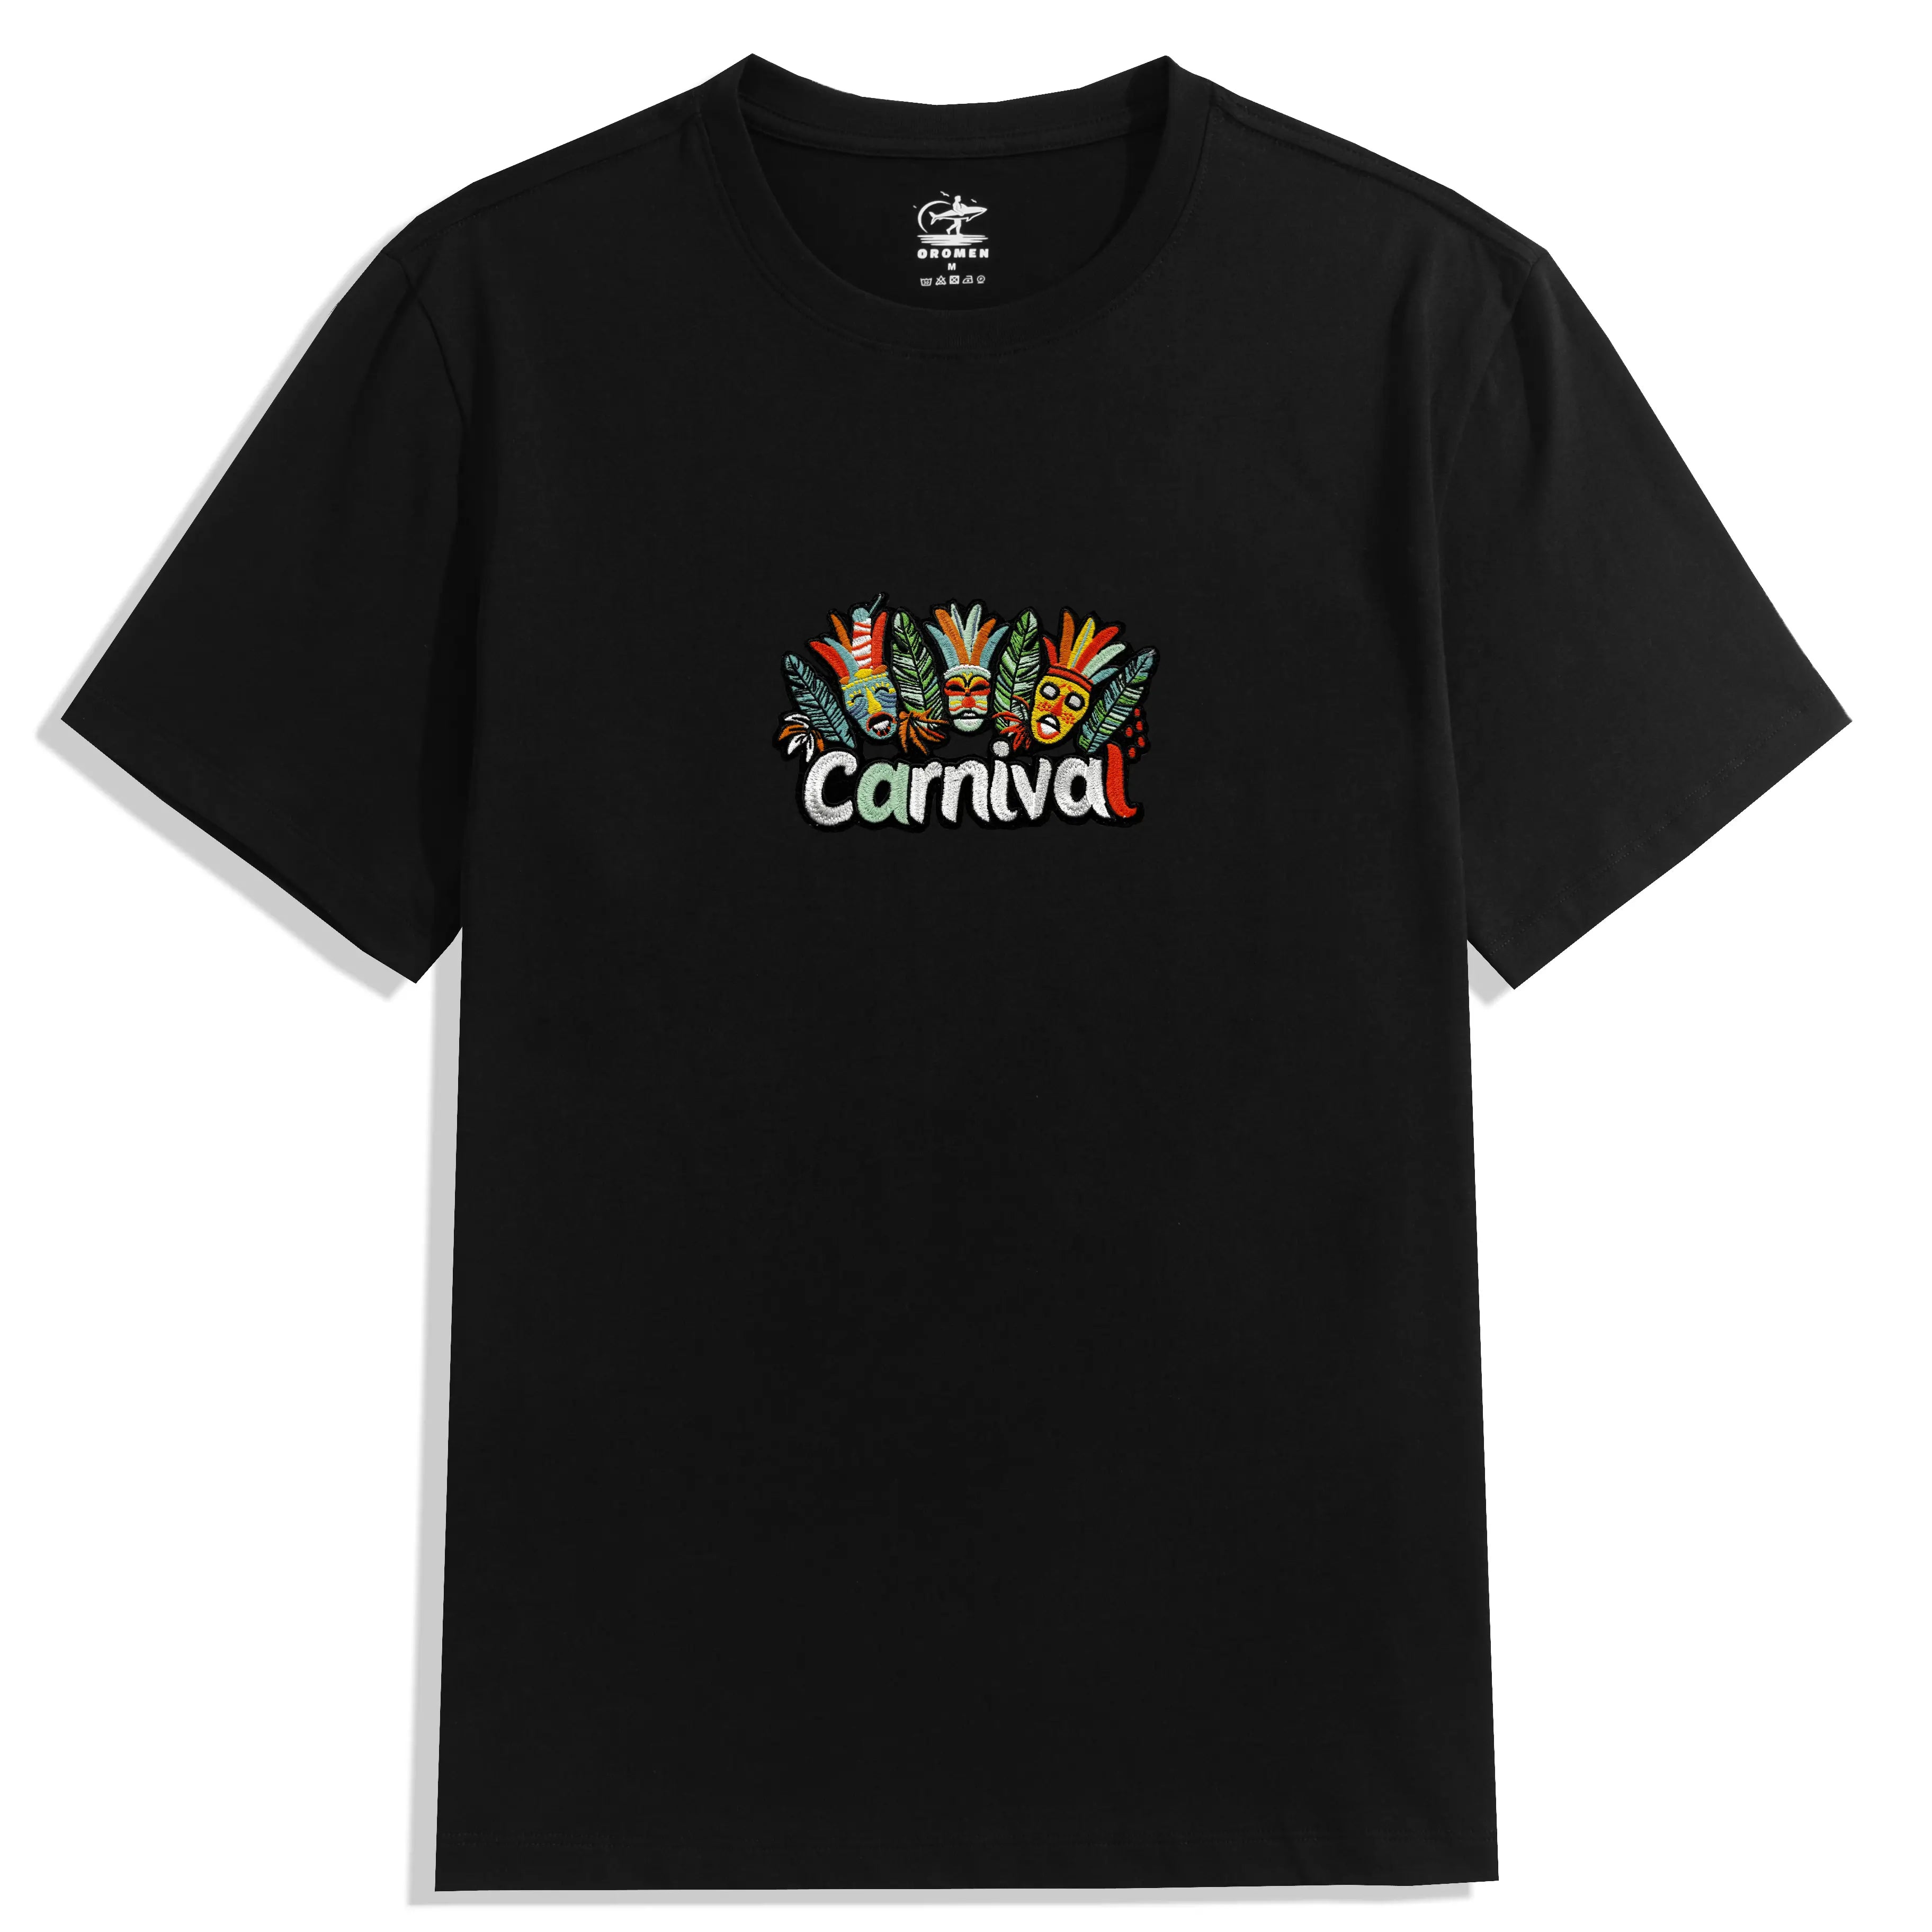 TIKI Carnival Cotton T-shirt Black Color